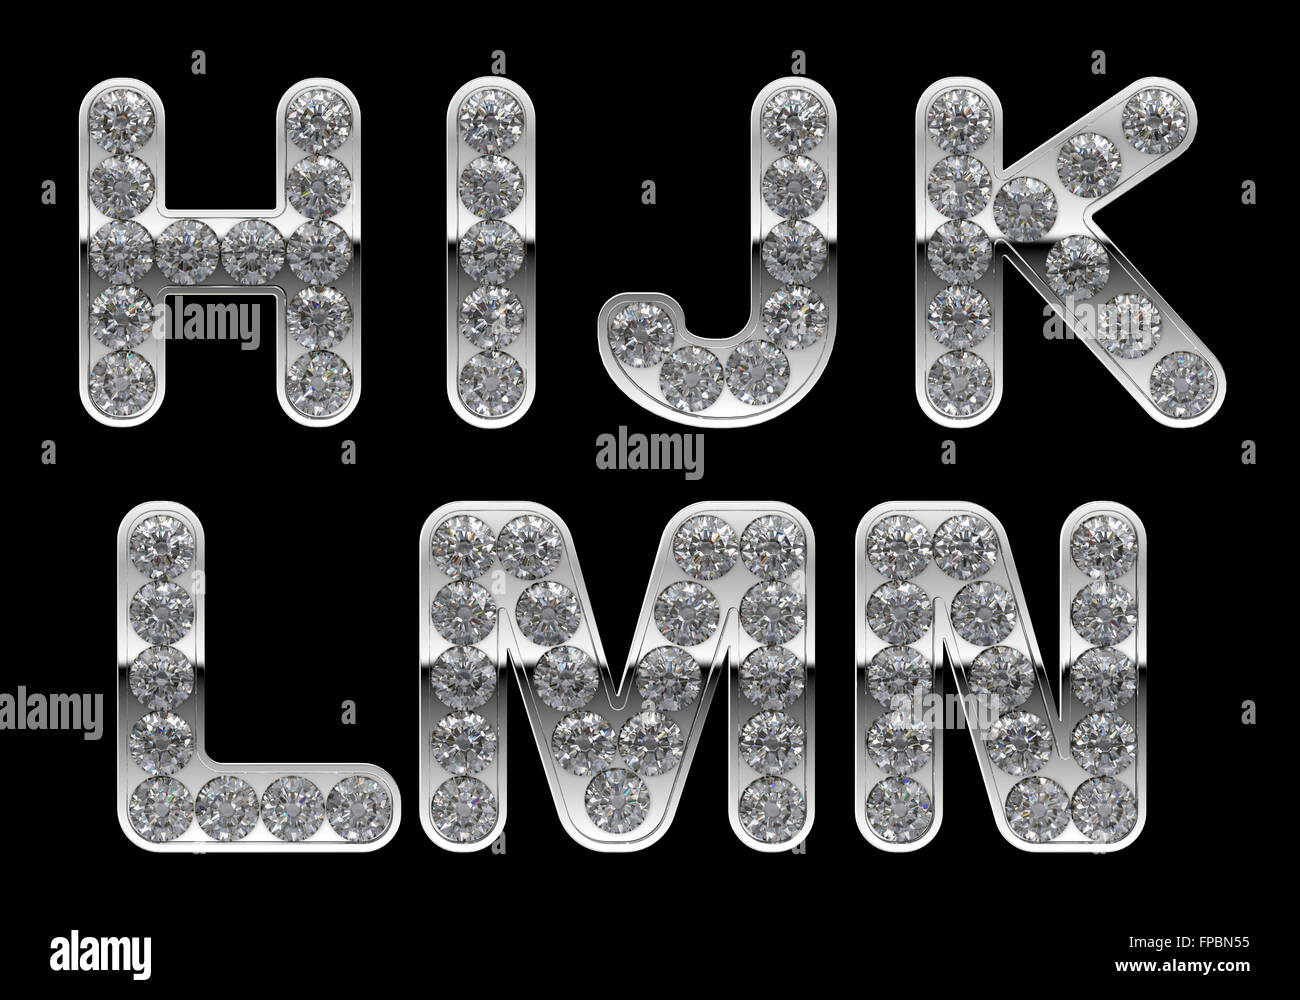 La plata H, I, J, K, L, M, N, cartas con incrustaciones de diamantes. Otro personaje están en mi cartera Foto de stock